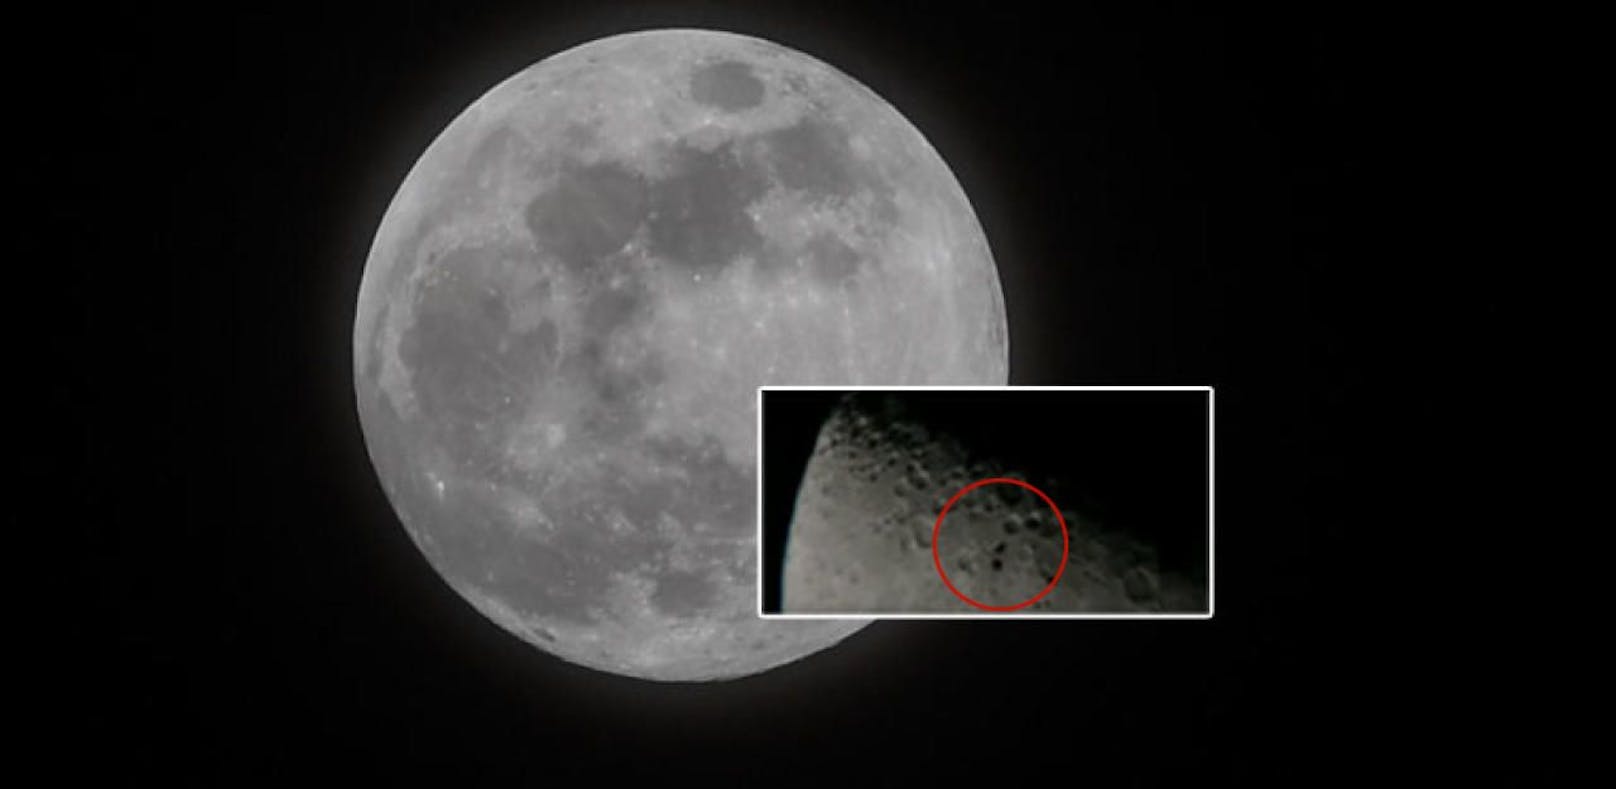 Mann filmt mysteriöse Objekte auf dem Mond